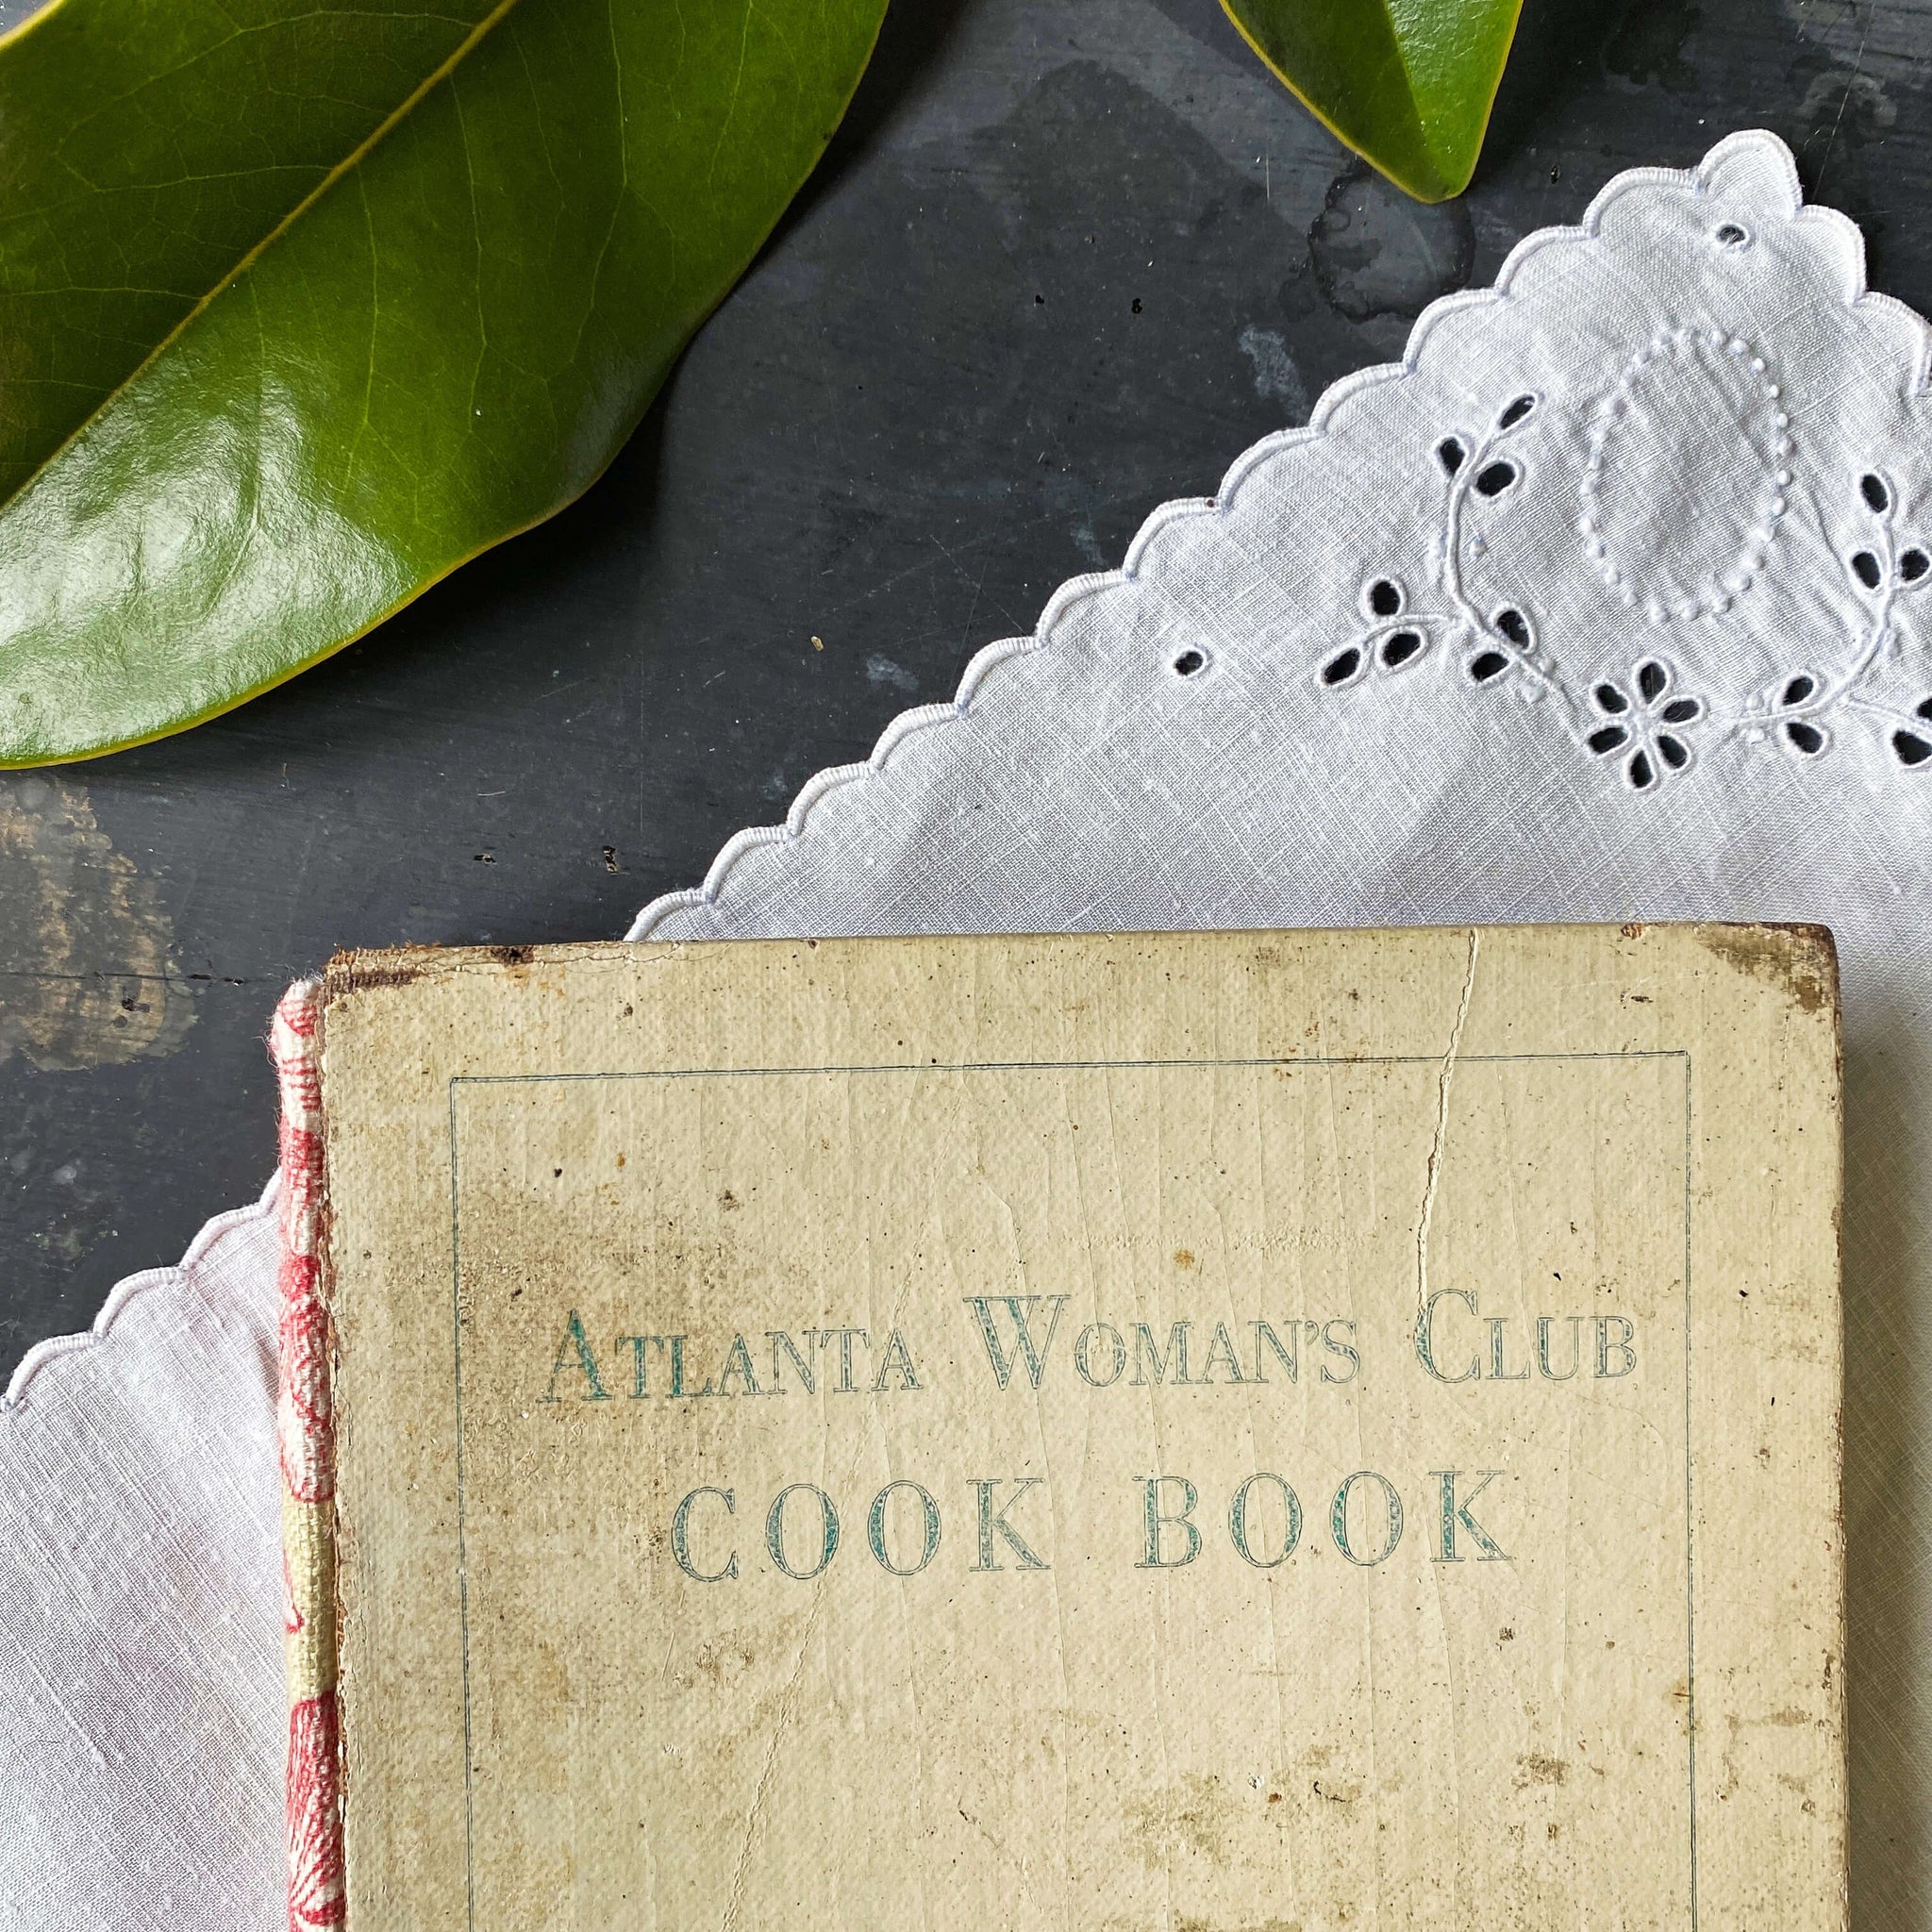 The Atlanta Woman's Club Cook Book circa 1921 - Very Rare